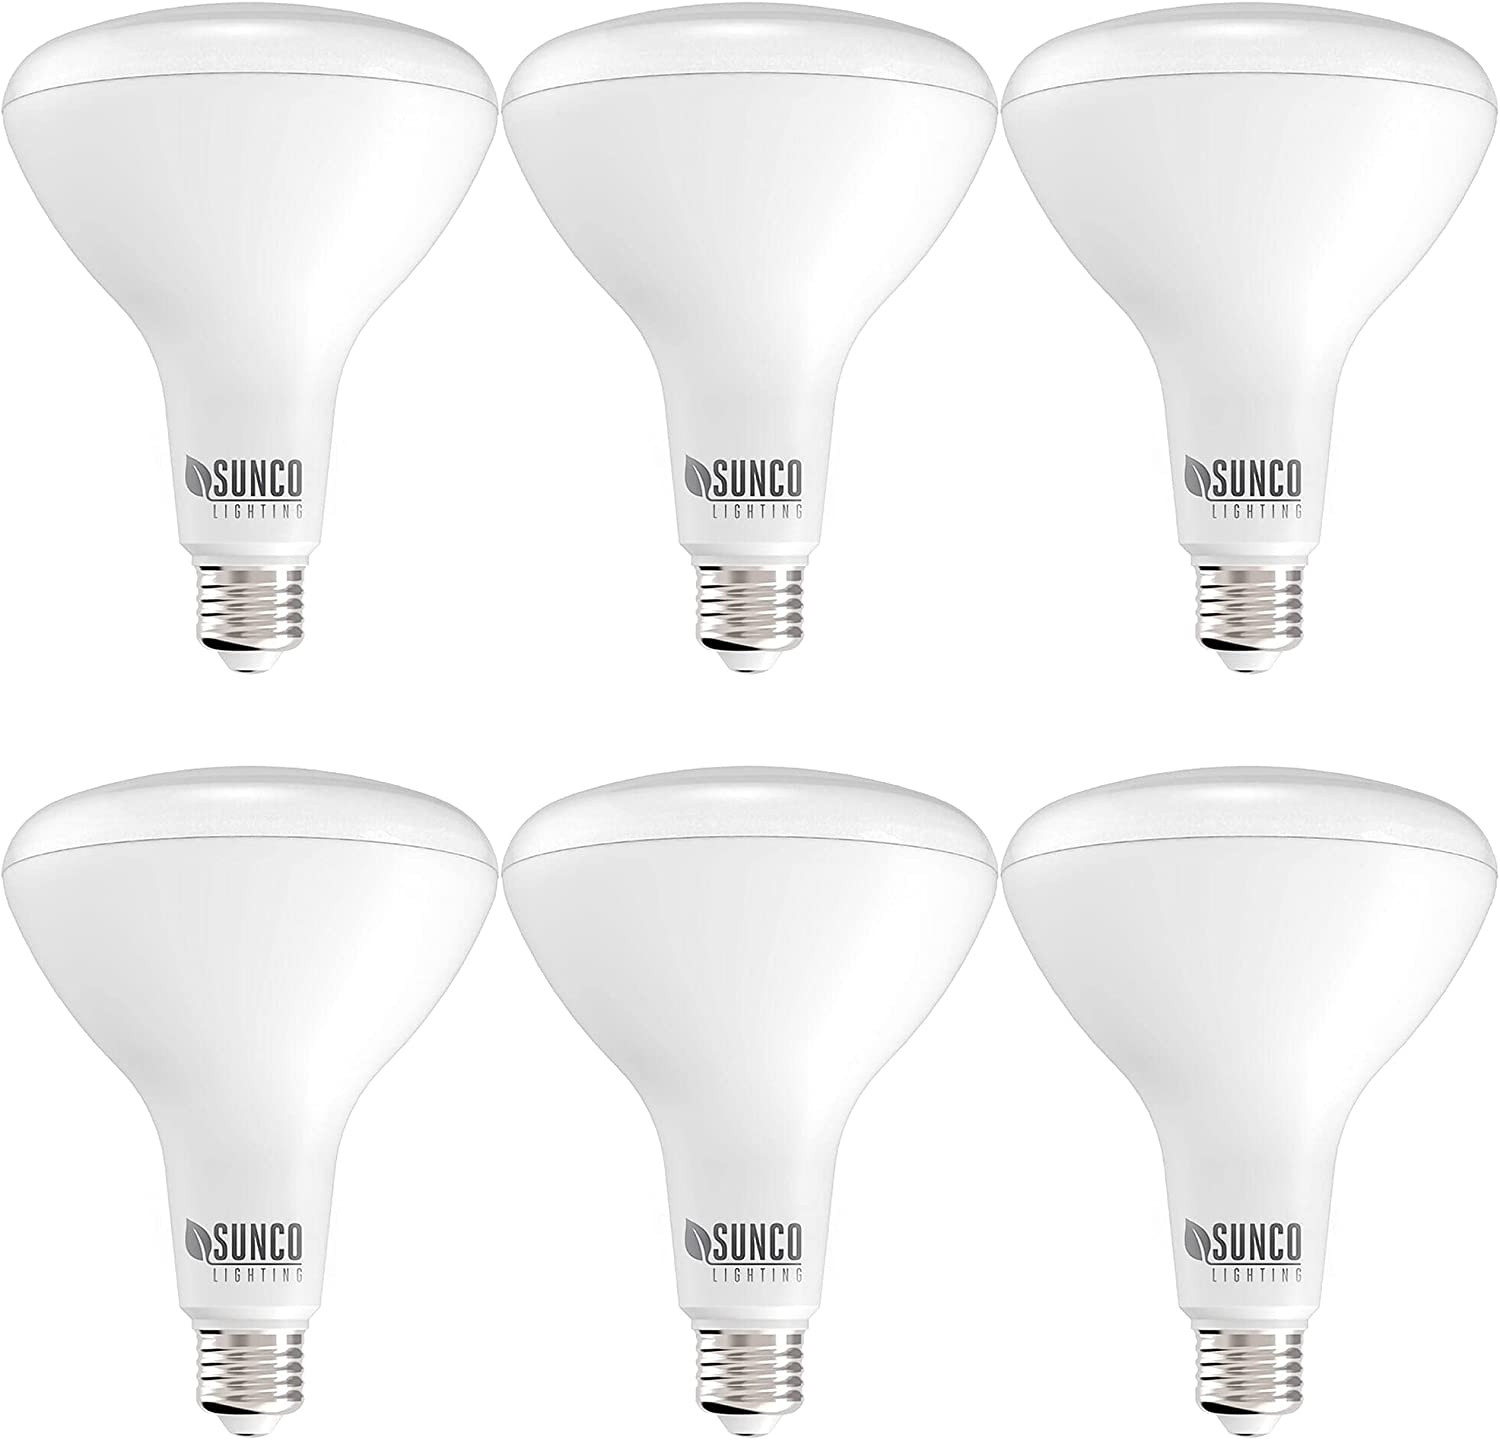 Sunco Lighting Energy Star Anti-Shatter Dimmable Light Bulbs, 6-Pack